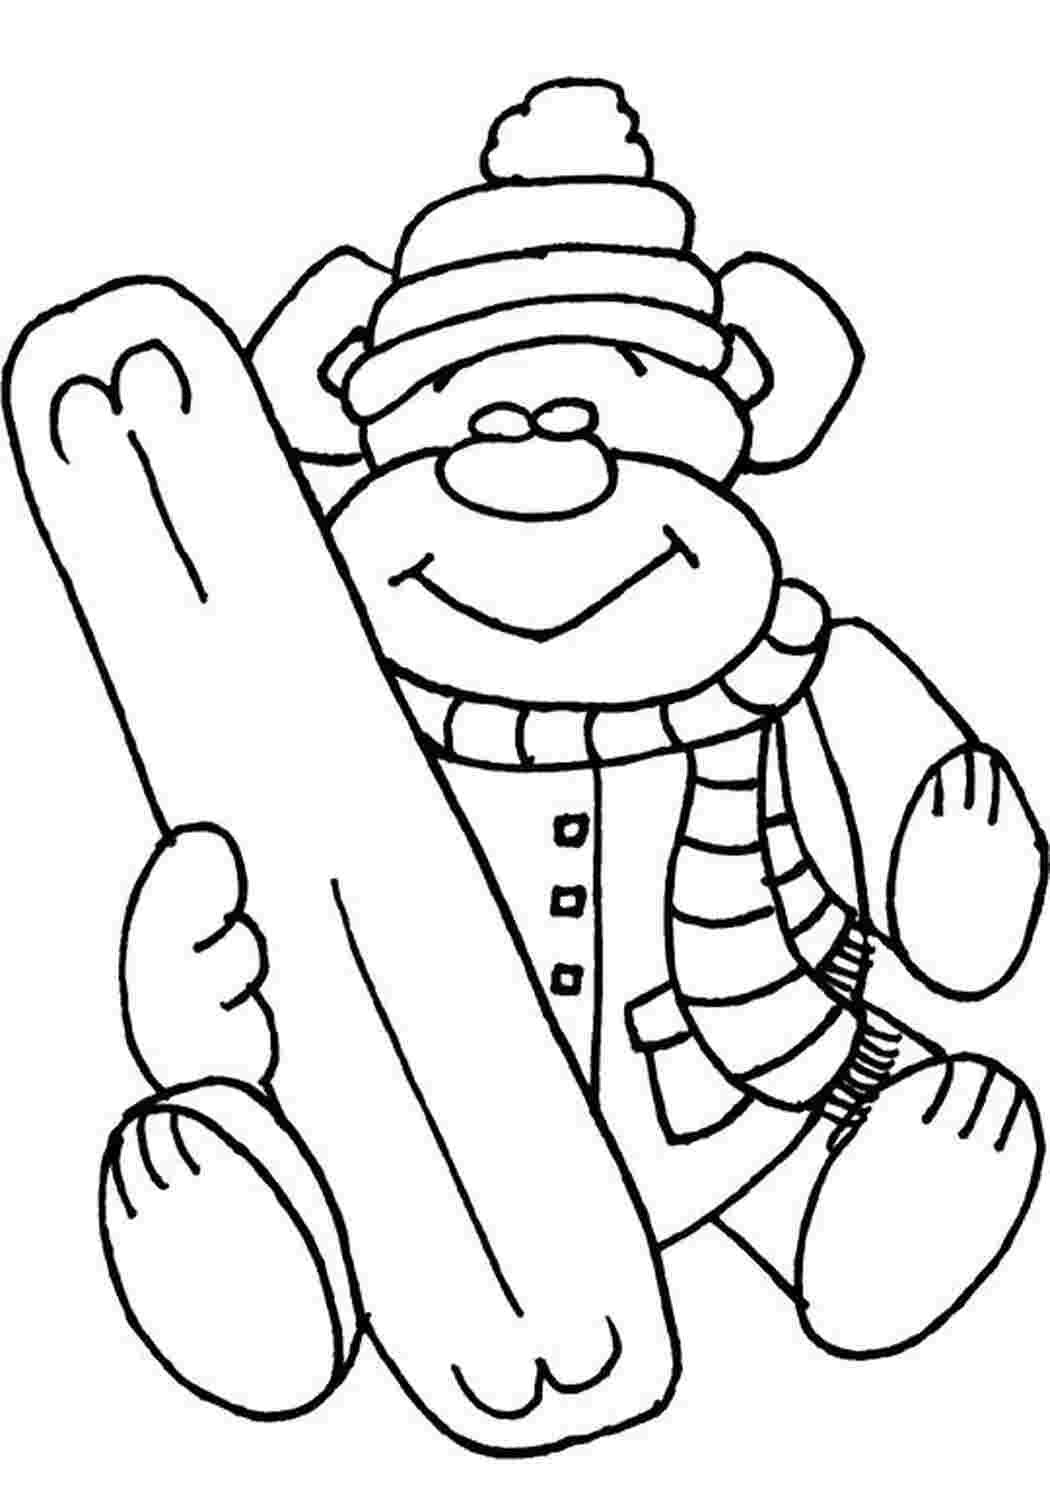 Раскраски картинки на рабочий стол онлайн Плюшевый мишка в шапочке со сноубордом Раскраски для мальчиков бесплатно